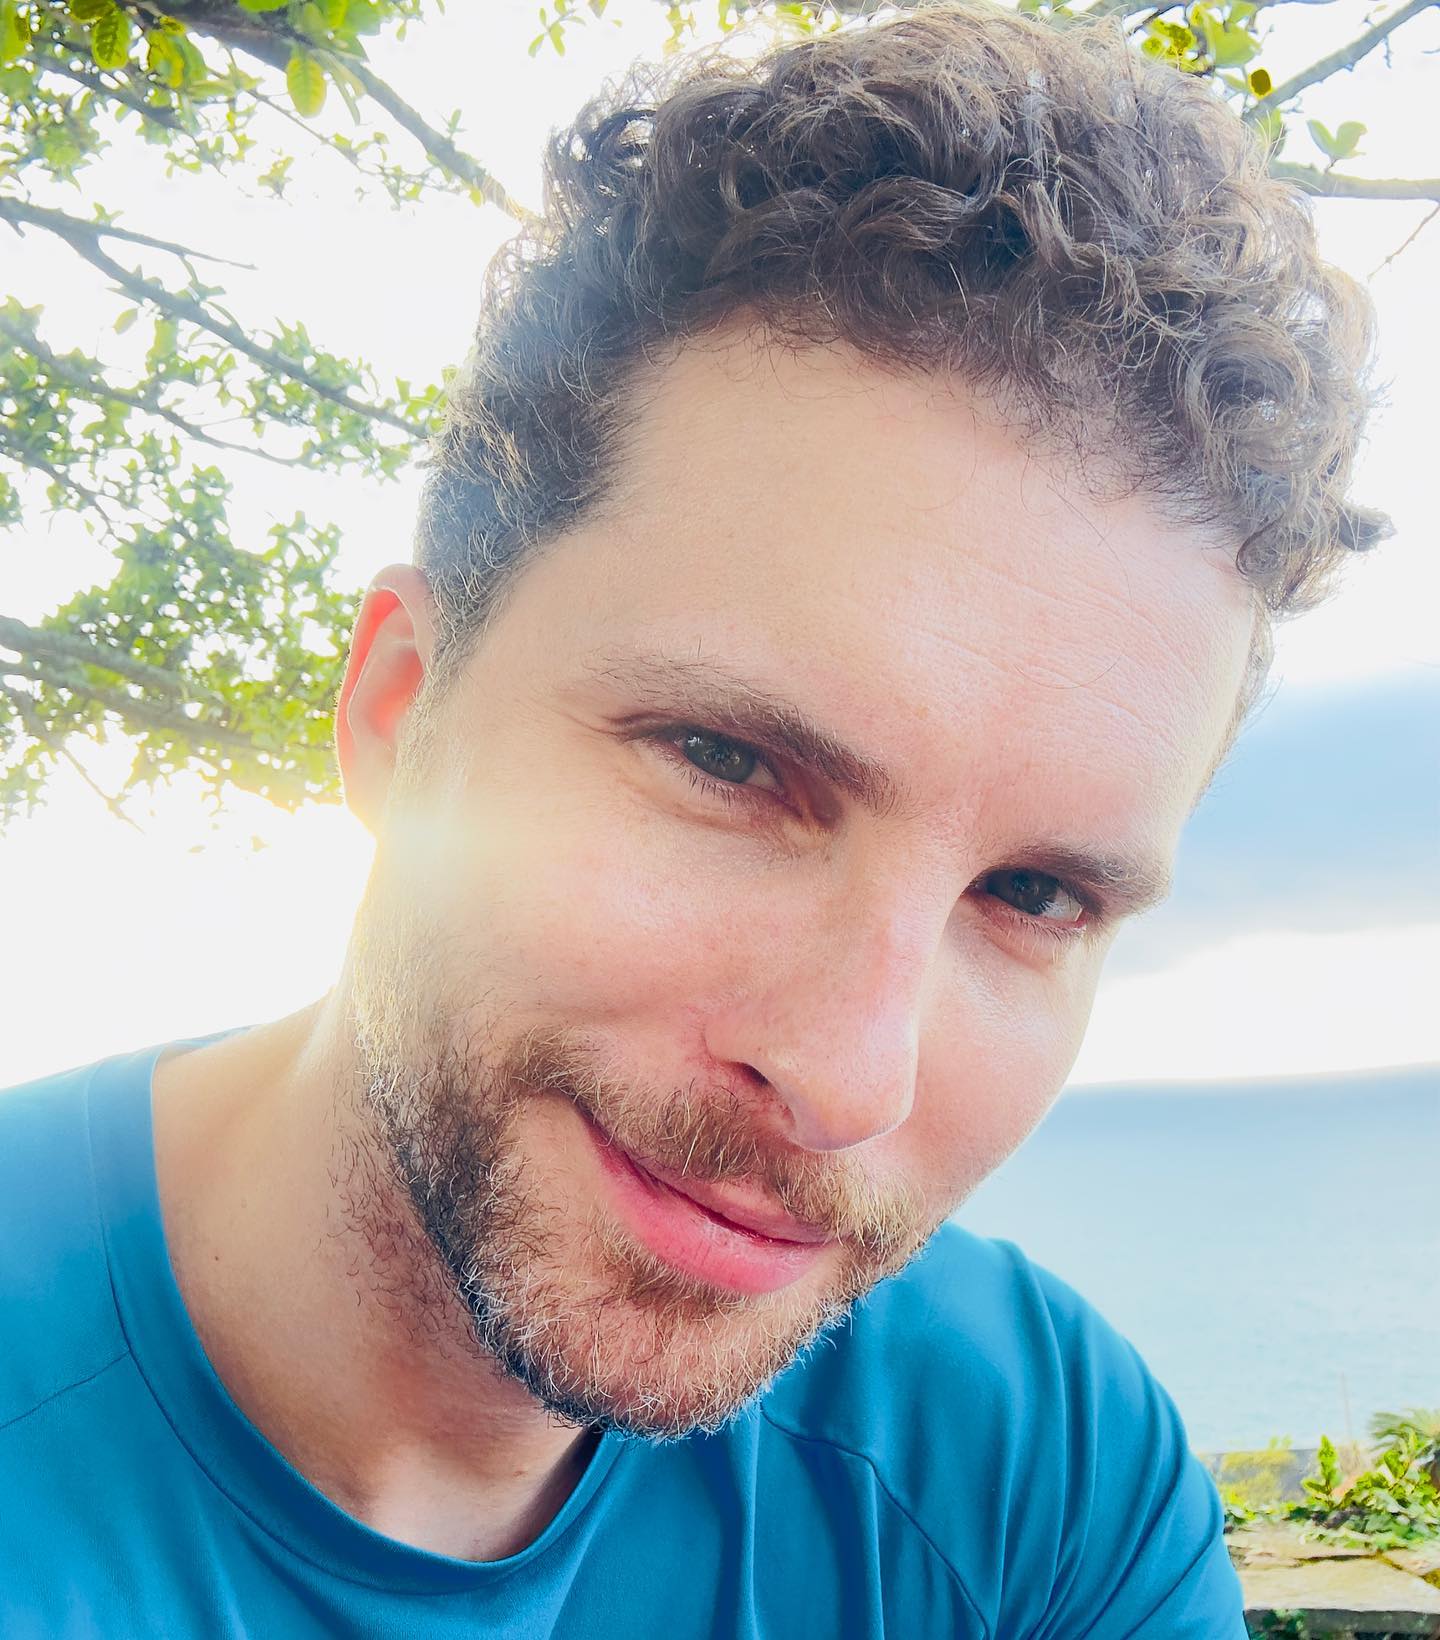 https://e.radikal.host/2023/04/20/Photo-by-Thiago-Fragoso-in-Rio-de-Janeiro-Rio-de-Janeiro.-May-be-a-selfie-of-1-person-beard-and-outdoors..jpg